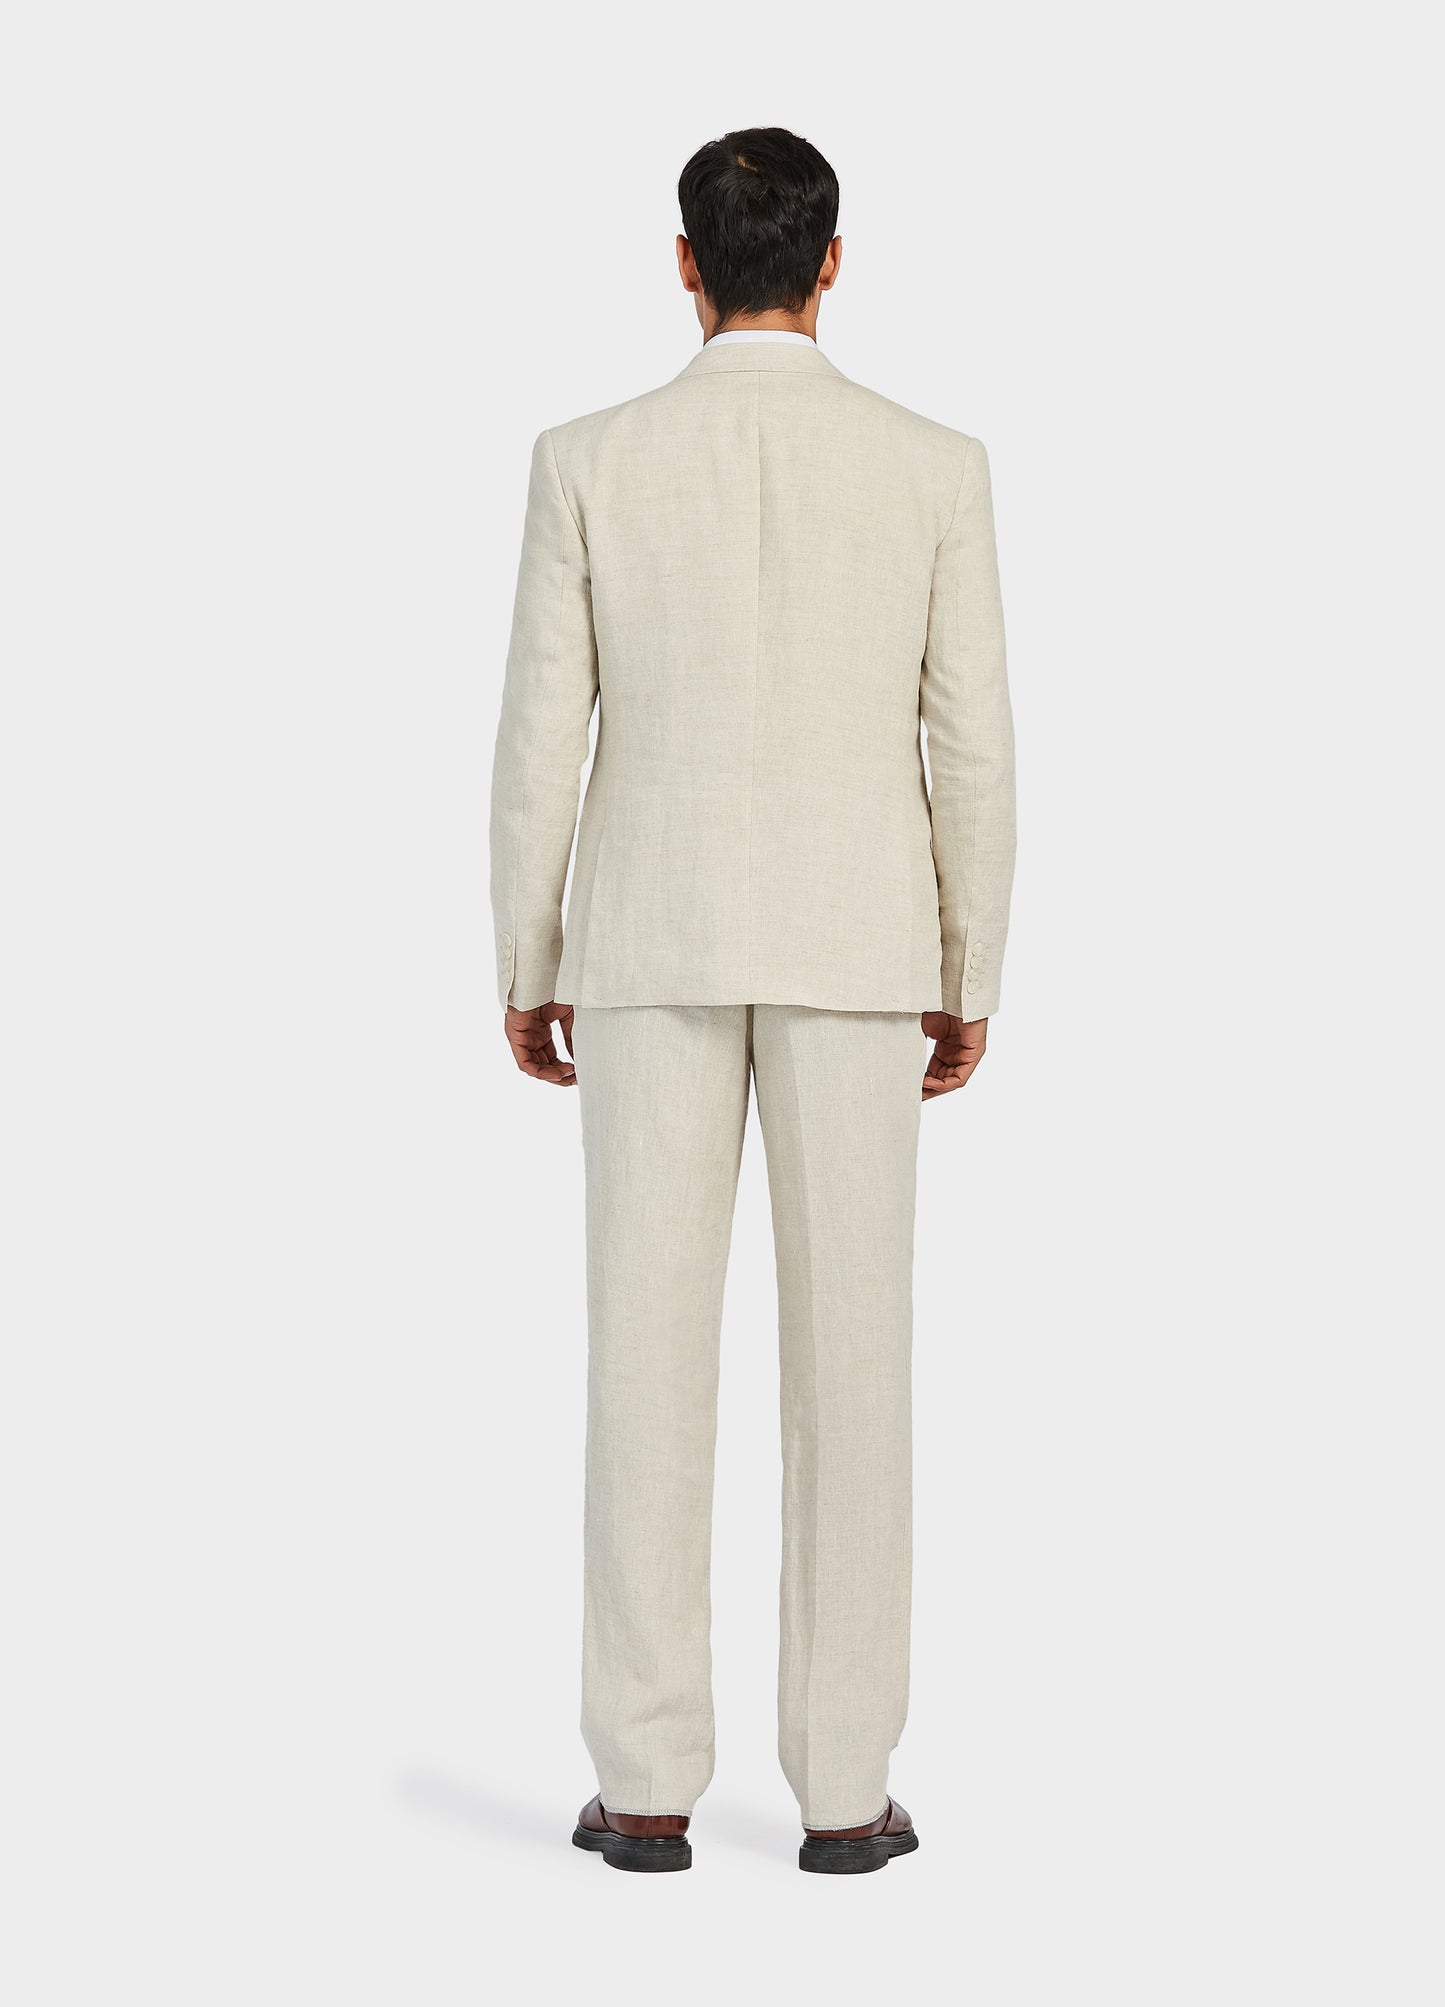 1PA1 Men's 3 Pieces 100% Linen Slim Fit Vested Suit, Wedding Tuxedo - Two Button Jacket, Vest & Pants